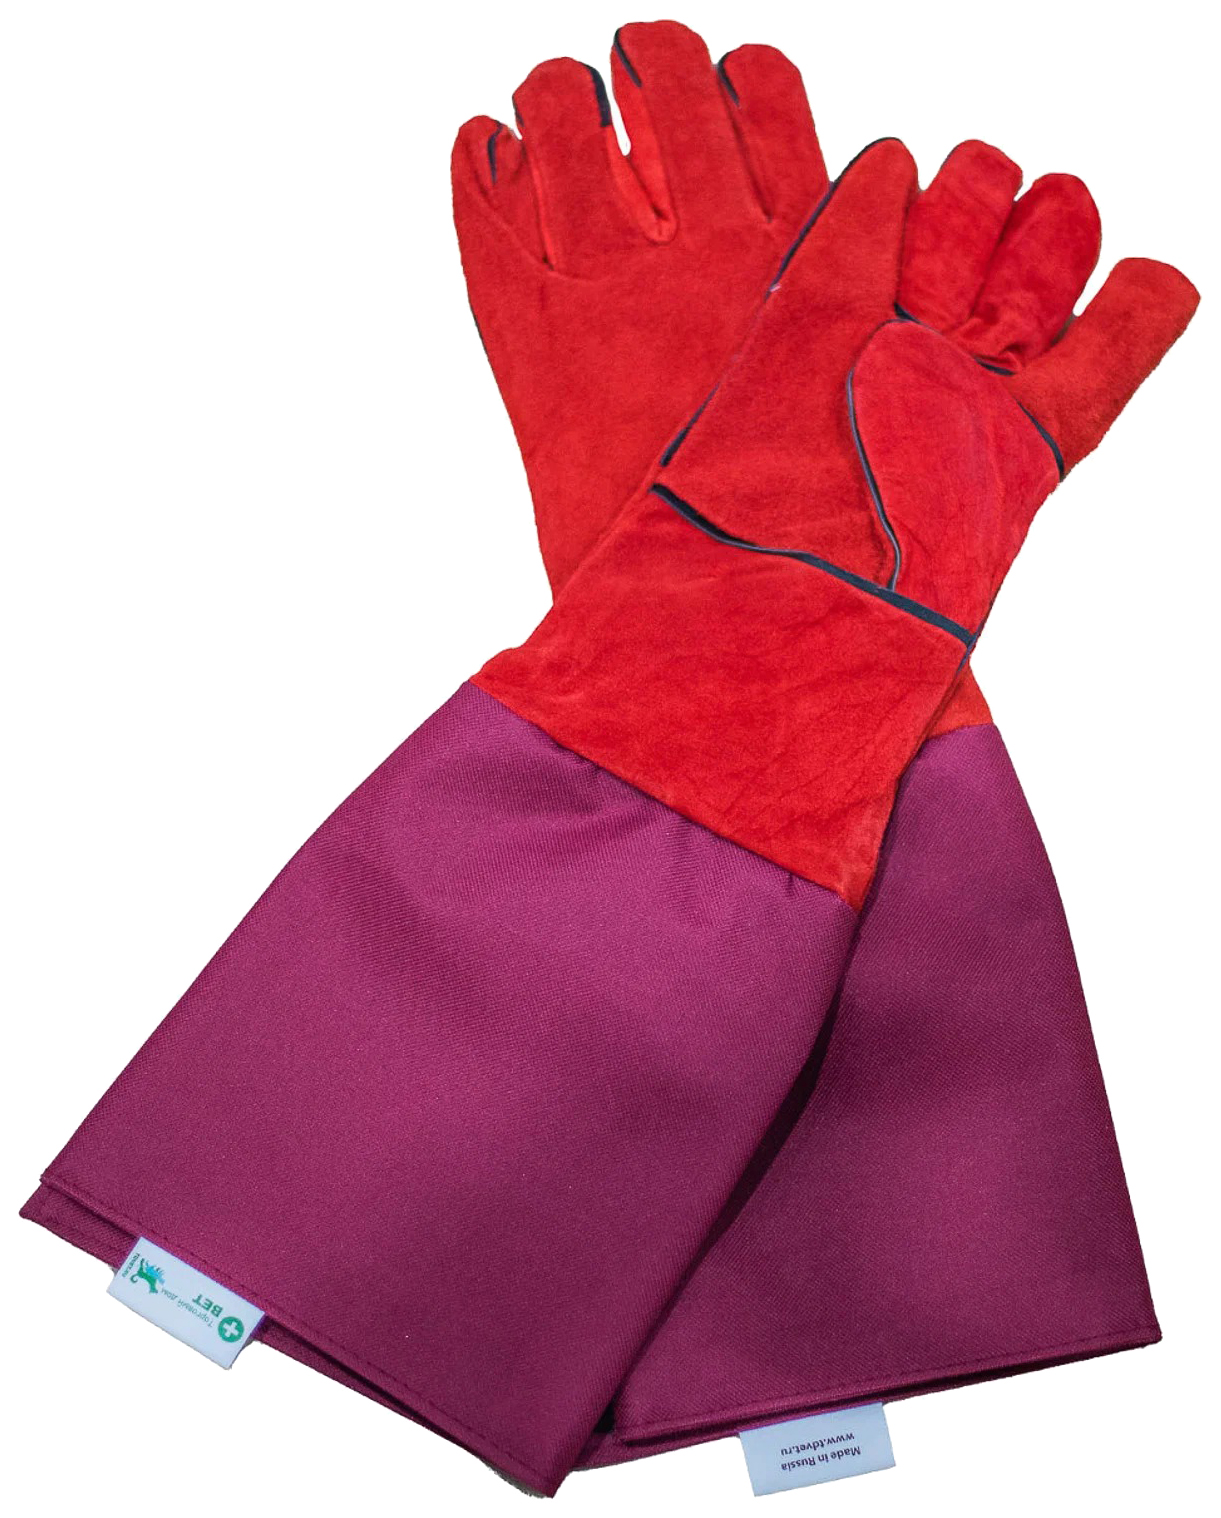 Ветеринарные защитные перчатки ТД ВЕТ удлиненные 52 см